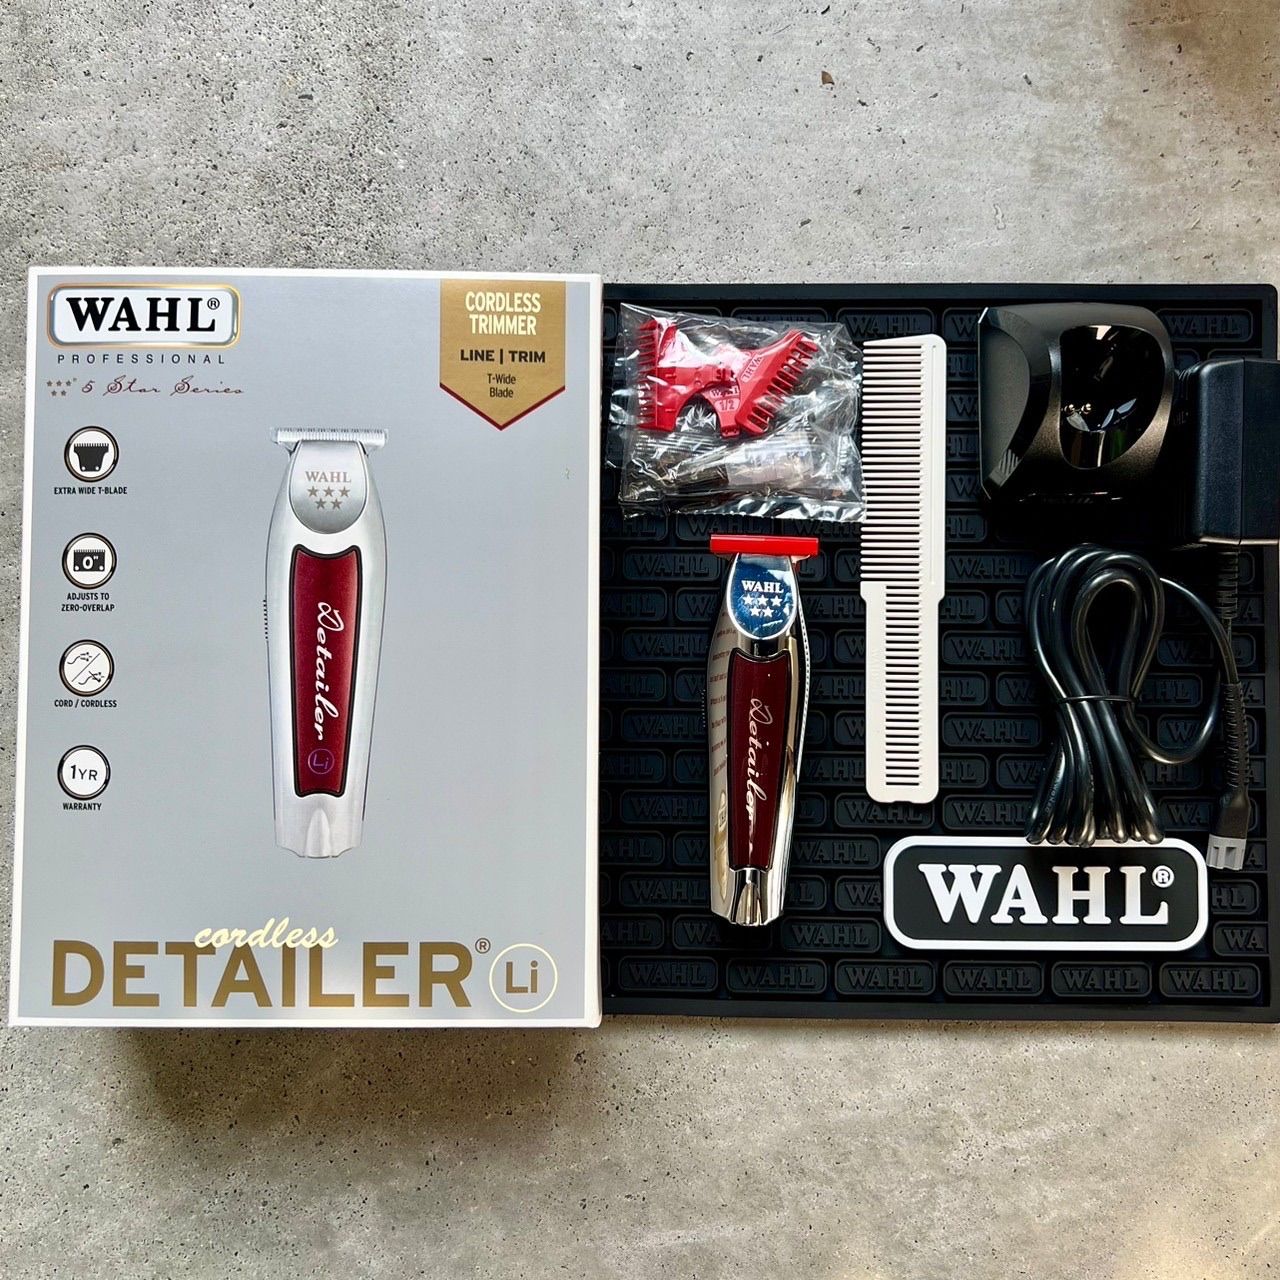 WAHL【日本正規品】5star コードレス ディテイラー Li ウォール - メルカリ